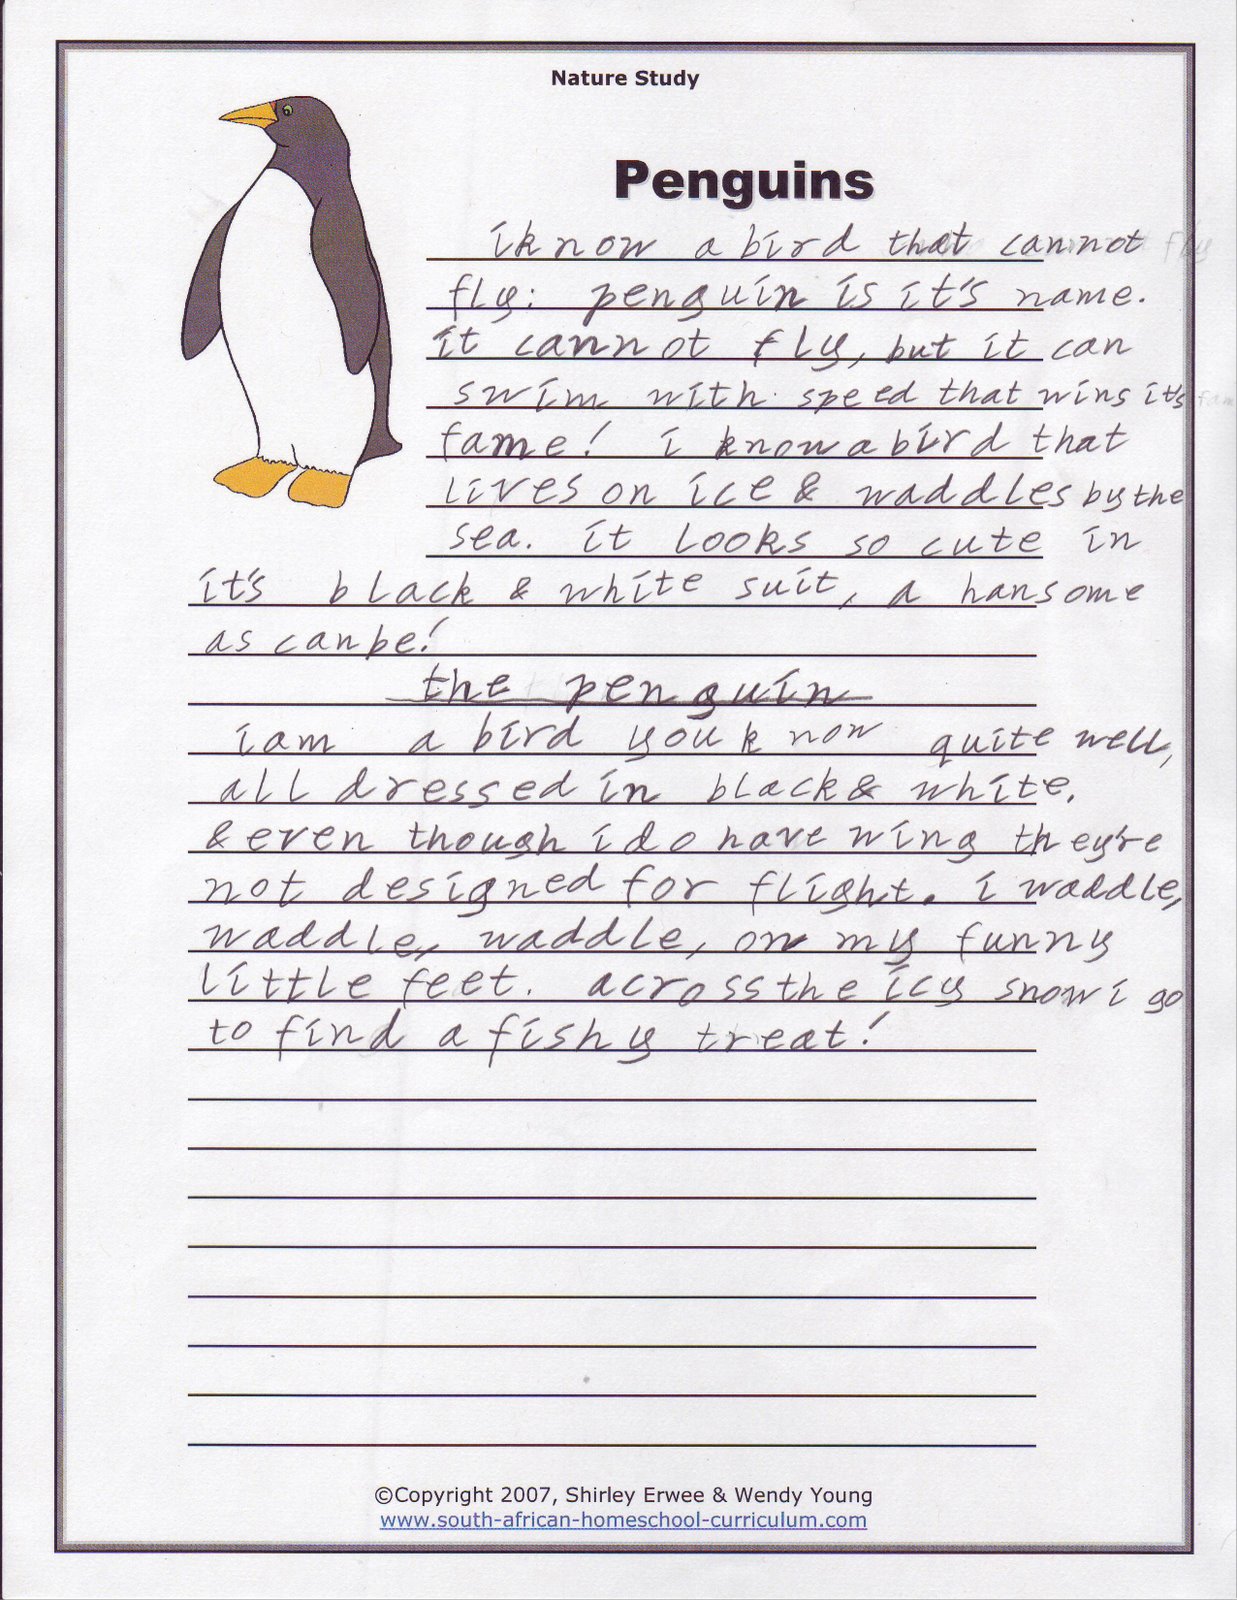 [Penguins+04.JPG]